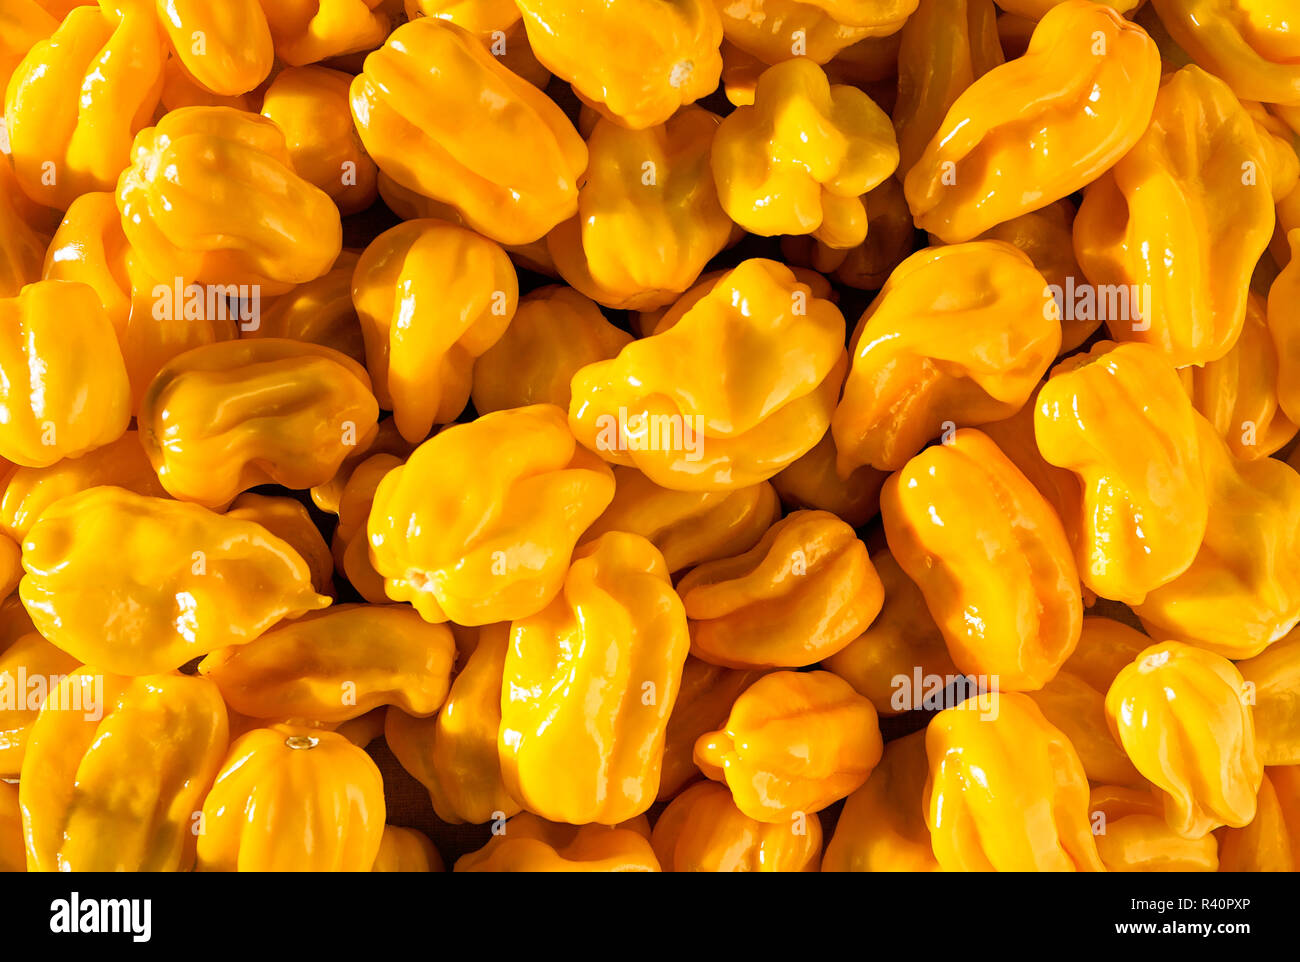 yellow spicy habaneros Stock Photo